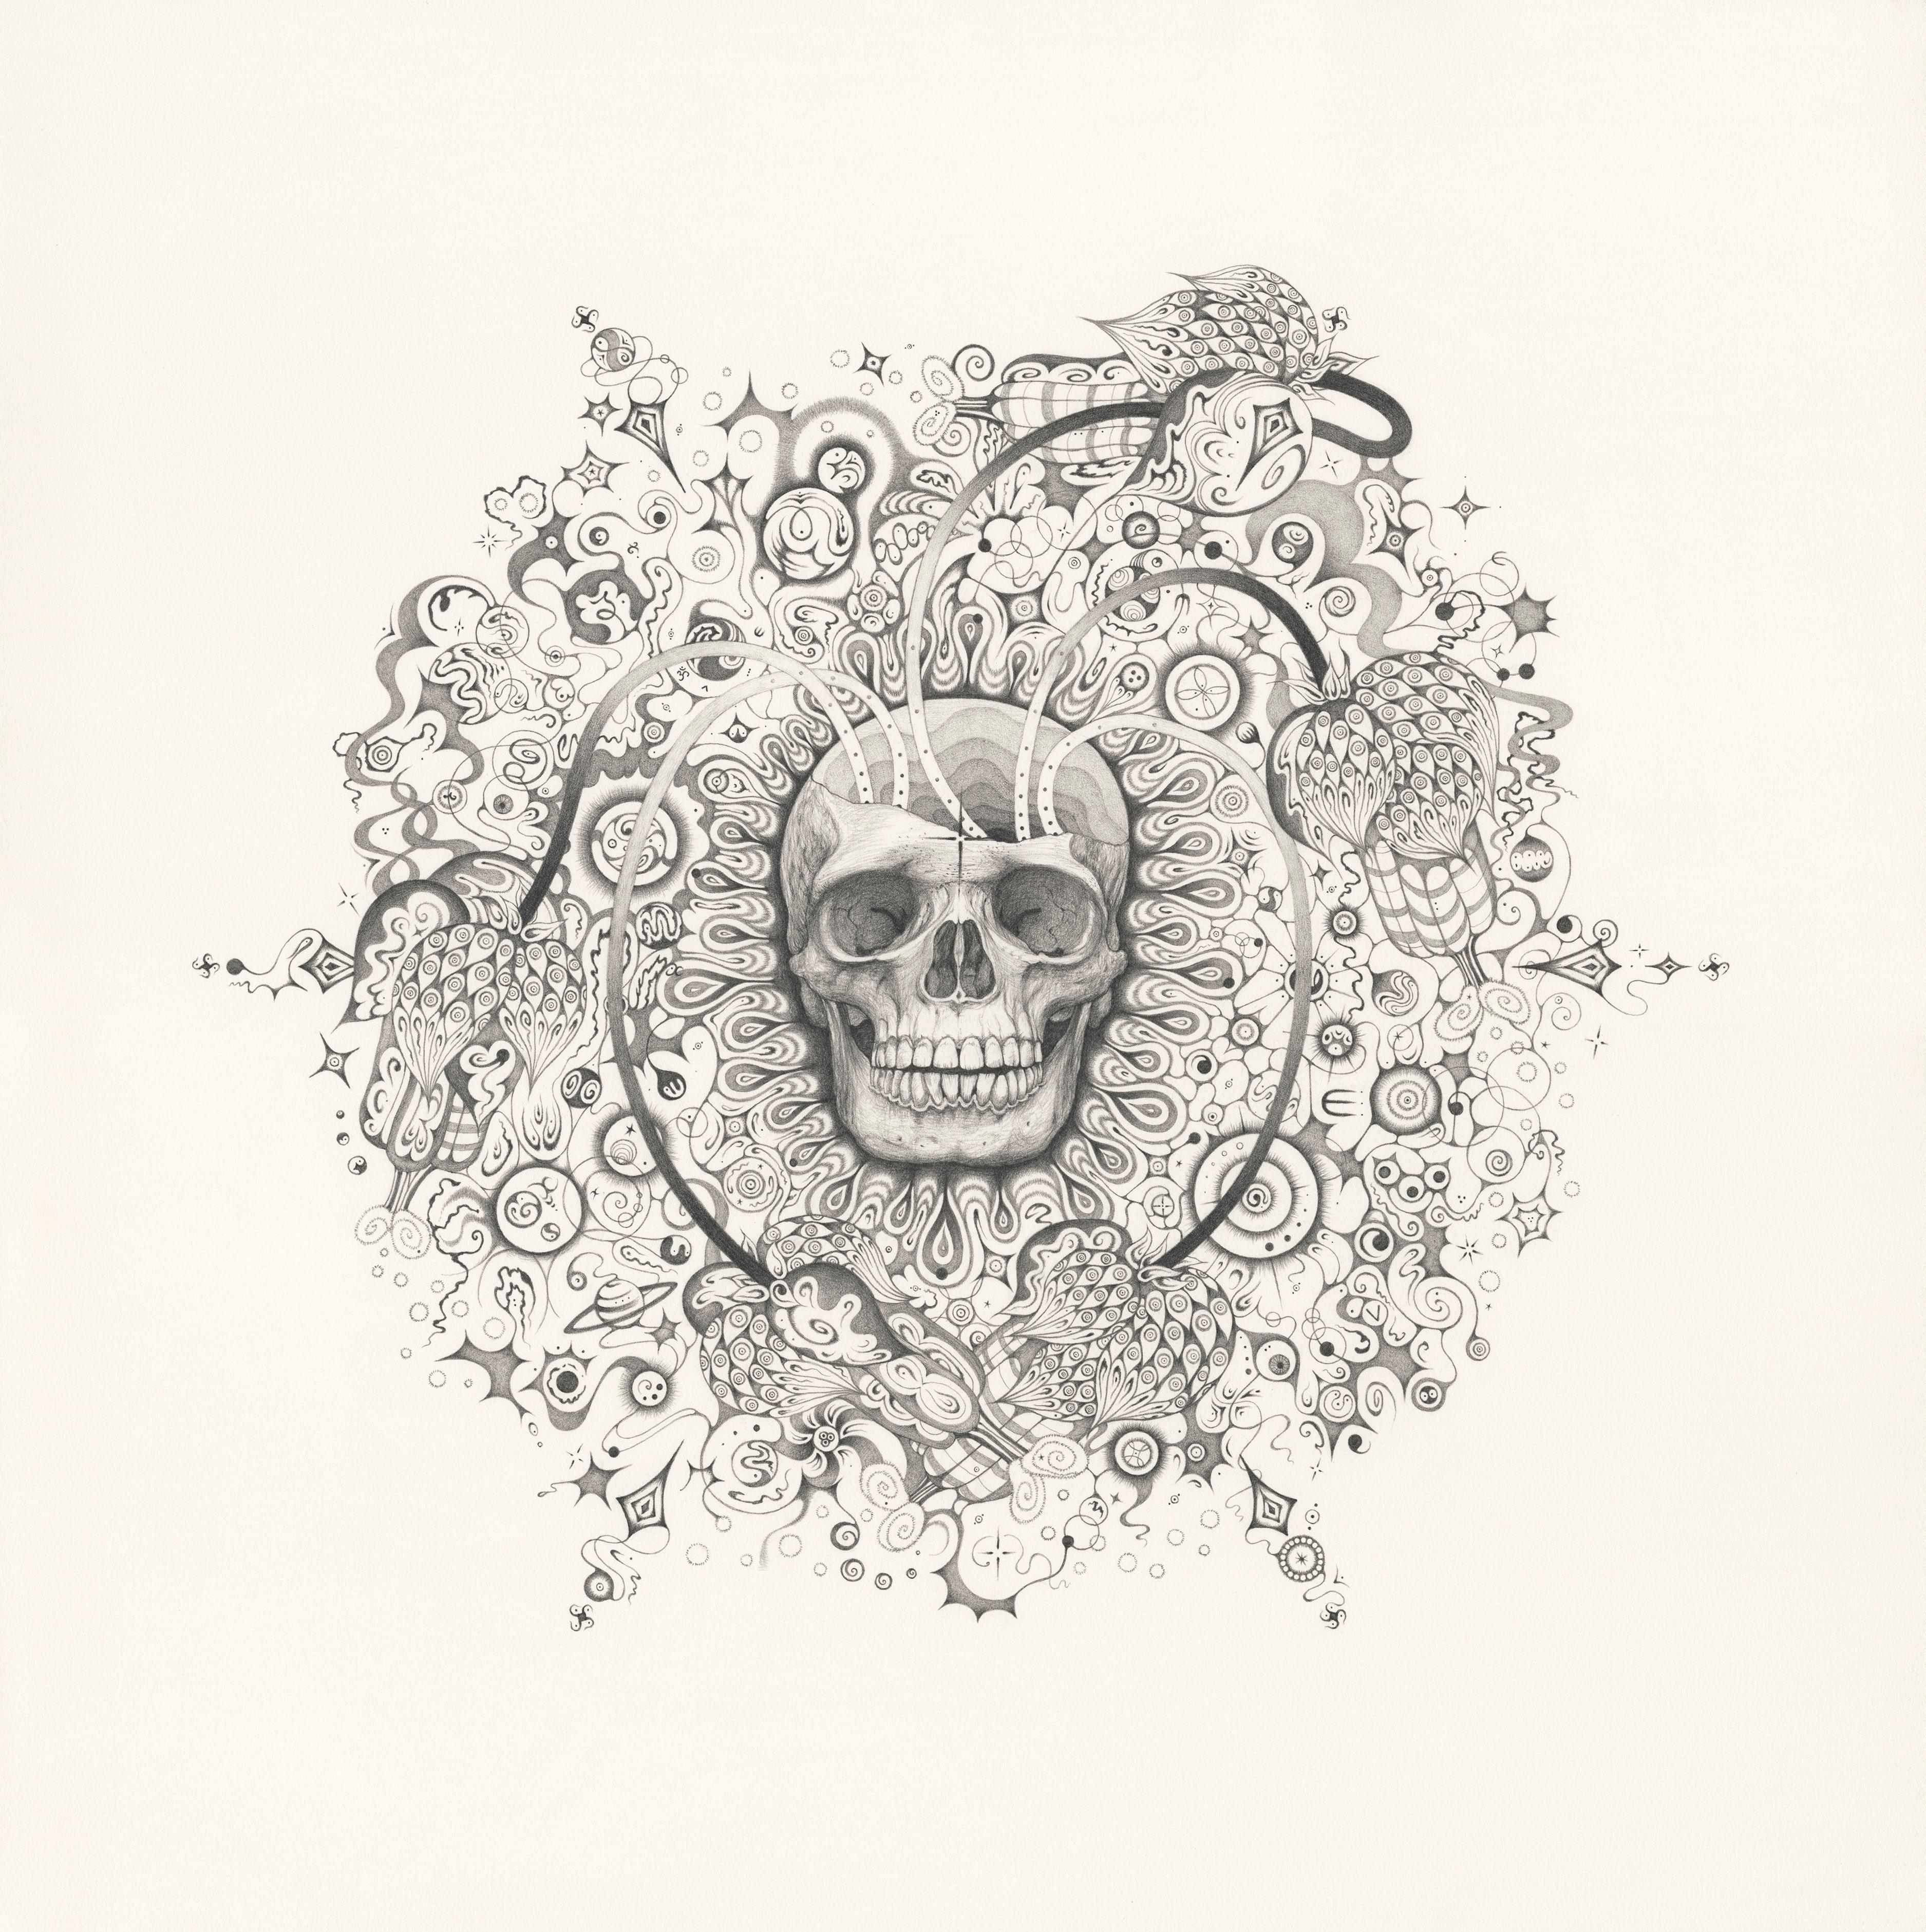 Michiyo Ihara Abstract Drawing - Snowflakes 155 Awareness, Skull and Planets, Graphite Pencil Drawing, Mandala